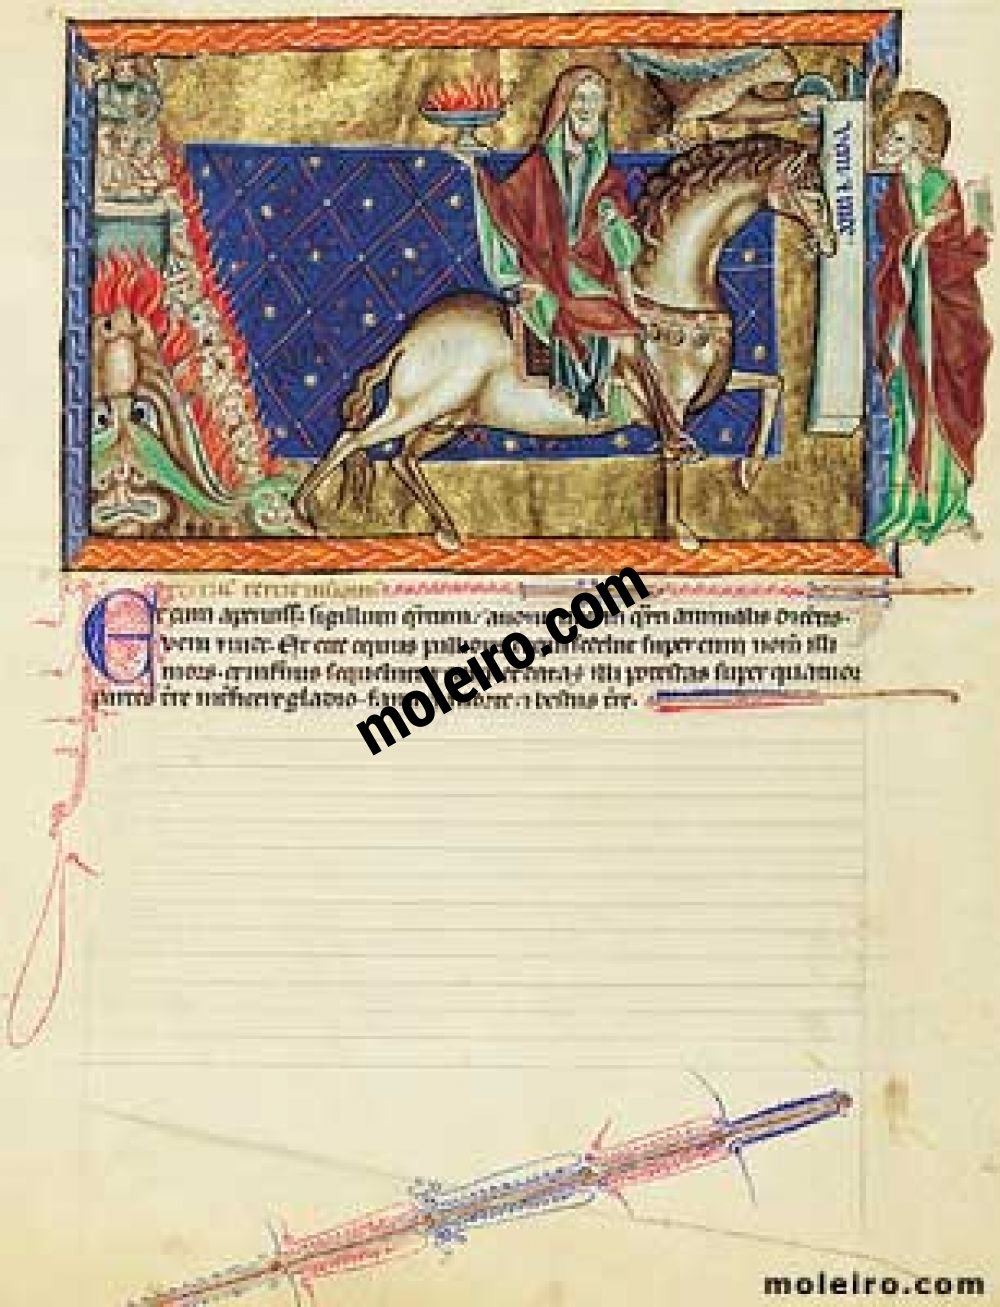 Apokalypse Gulbenkian f. 10v, Das vierte Siegel: der Reiter auf dem hellbraunen Pferd